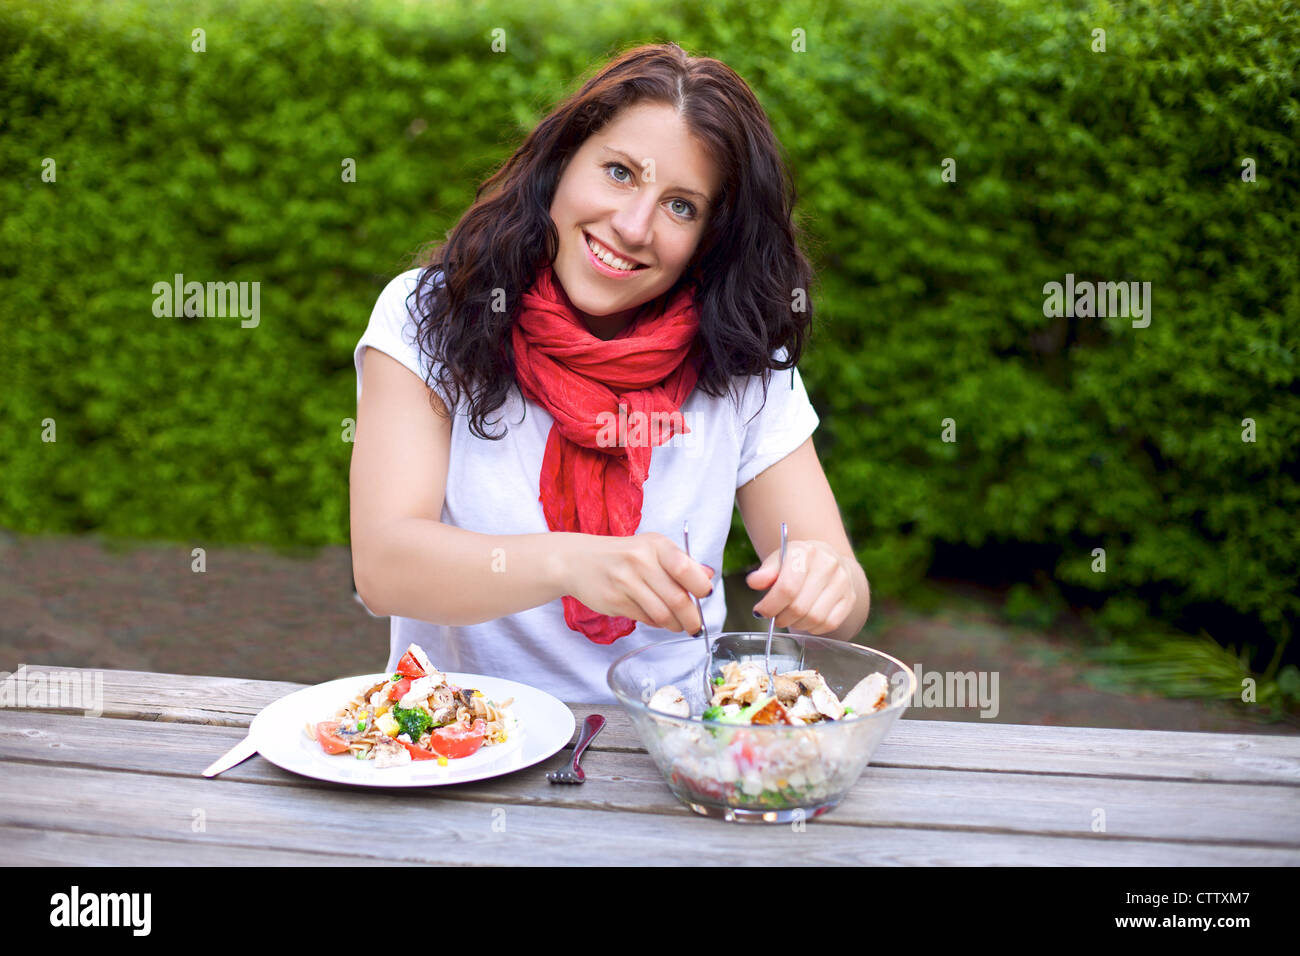 Ritratto di una donna sorridente durante la preparazione di una ciotola di insalata all'aperto Foto Stock